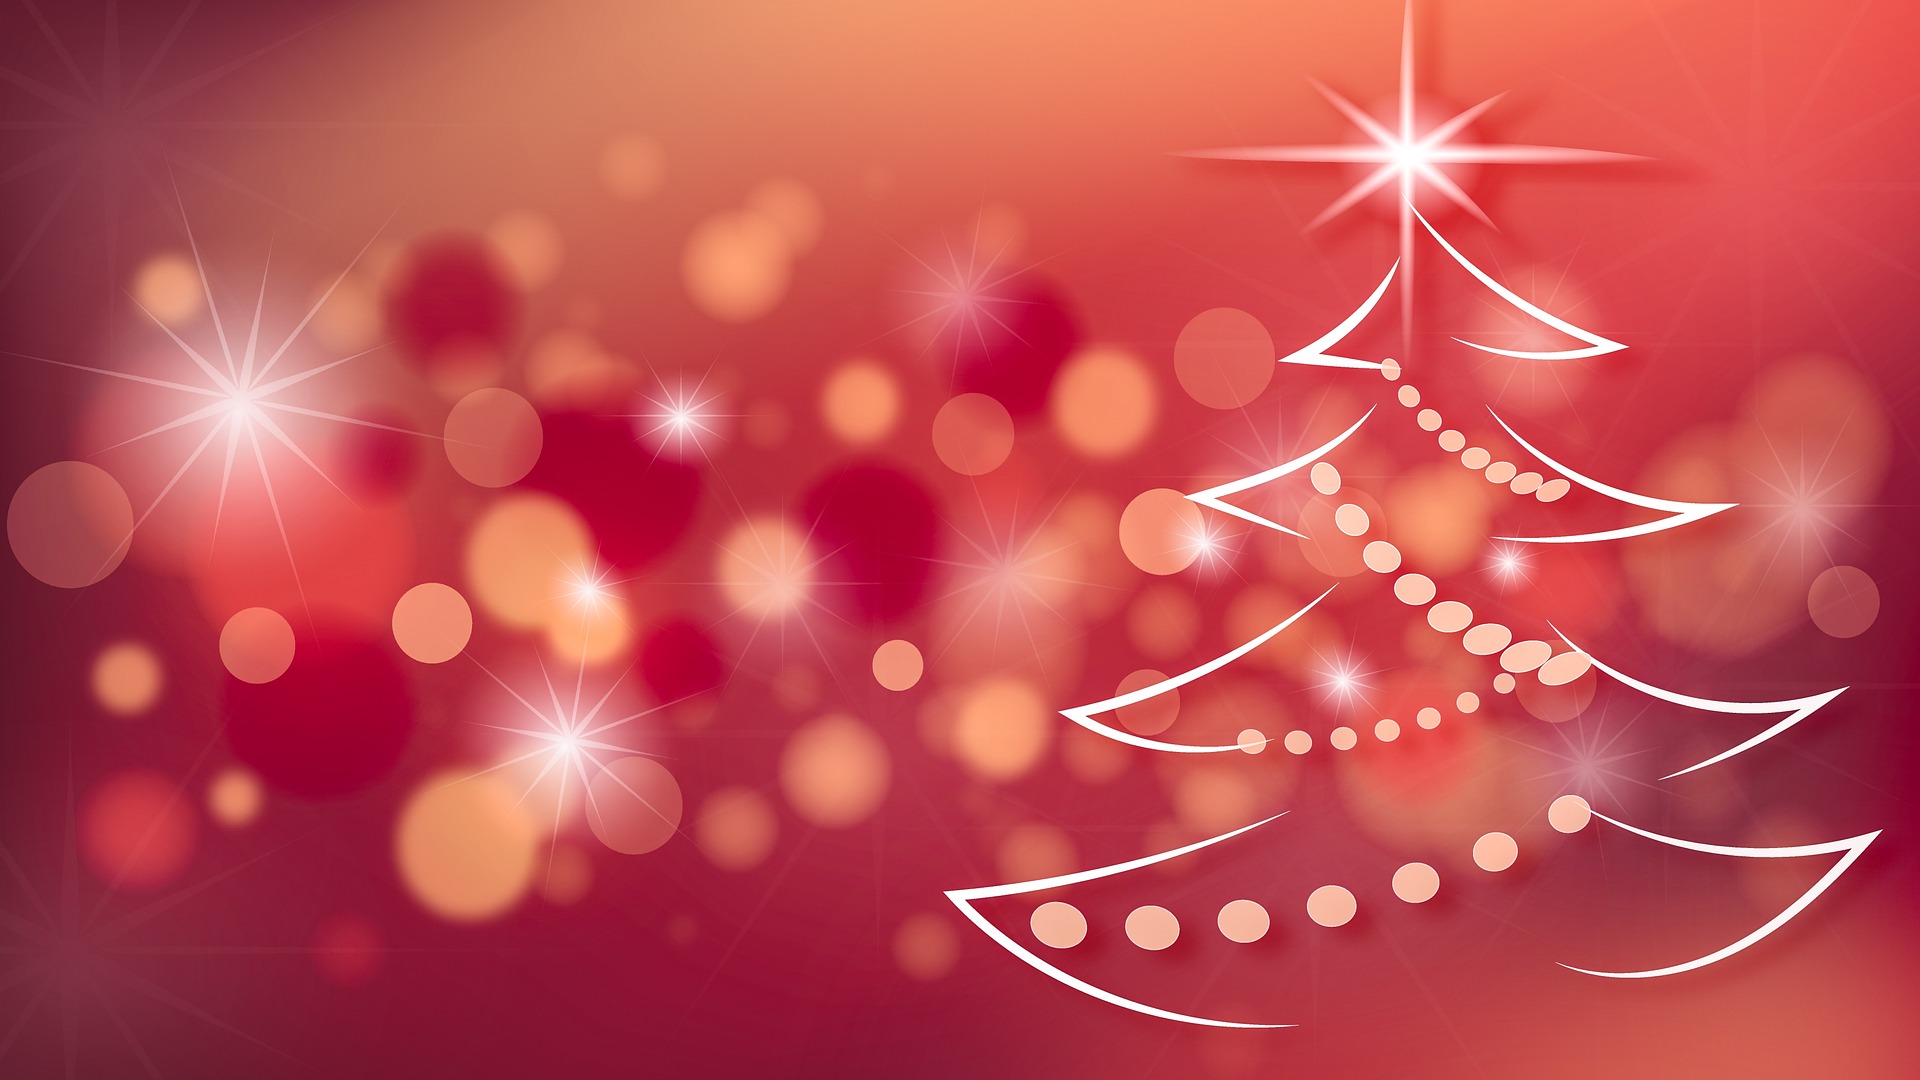 Rsa Alfieri inaugura la stagione natalizia, Babbo Natale, presepe e merende